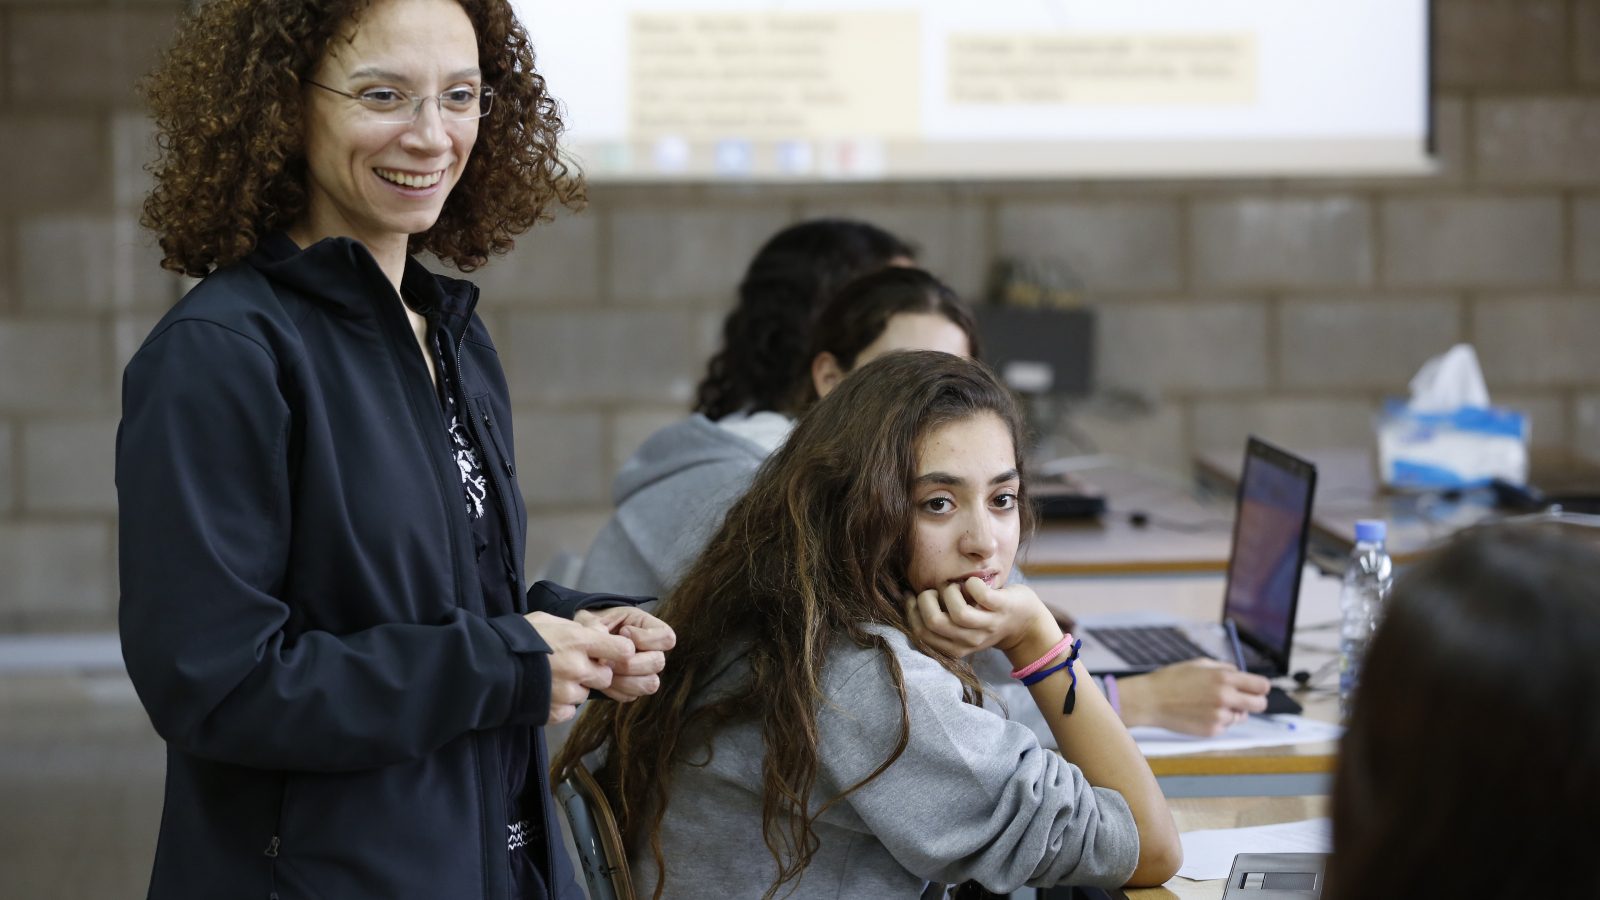 المدرّسة اللبنانيّة لين صقر (وسط الصّورة) تدردش مع الطّالبات خلال درس في التّثقيف الإعلامي والمعلوماتي في مدرسة يسوع ومريم بمنطقة الرّبوة شمال-شرق لبنان بتاريخ 3 نوفمبر 2016.